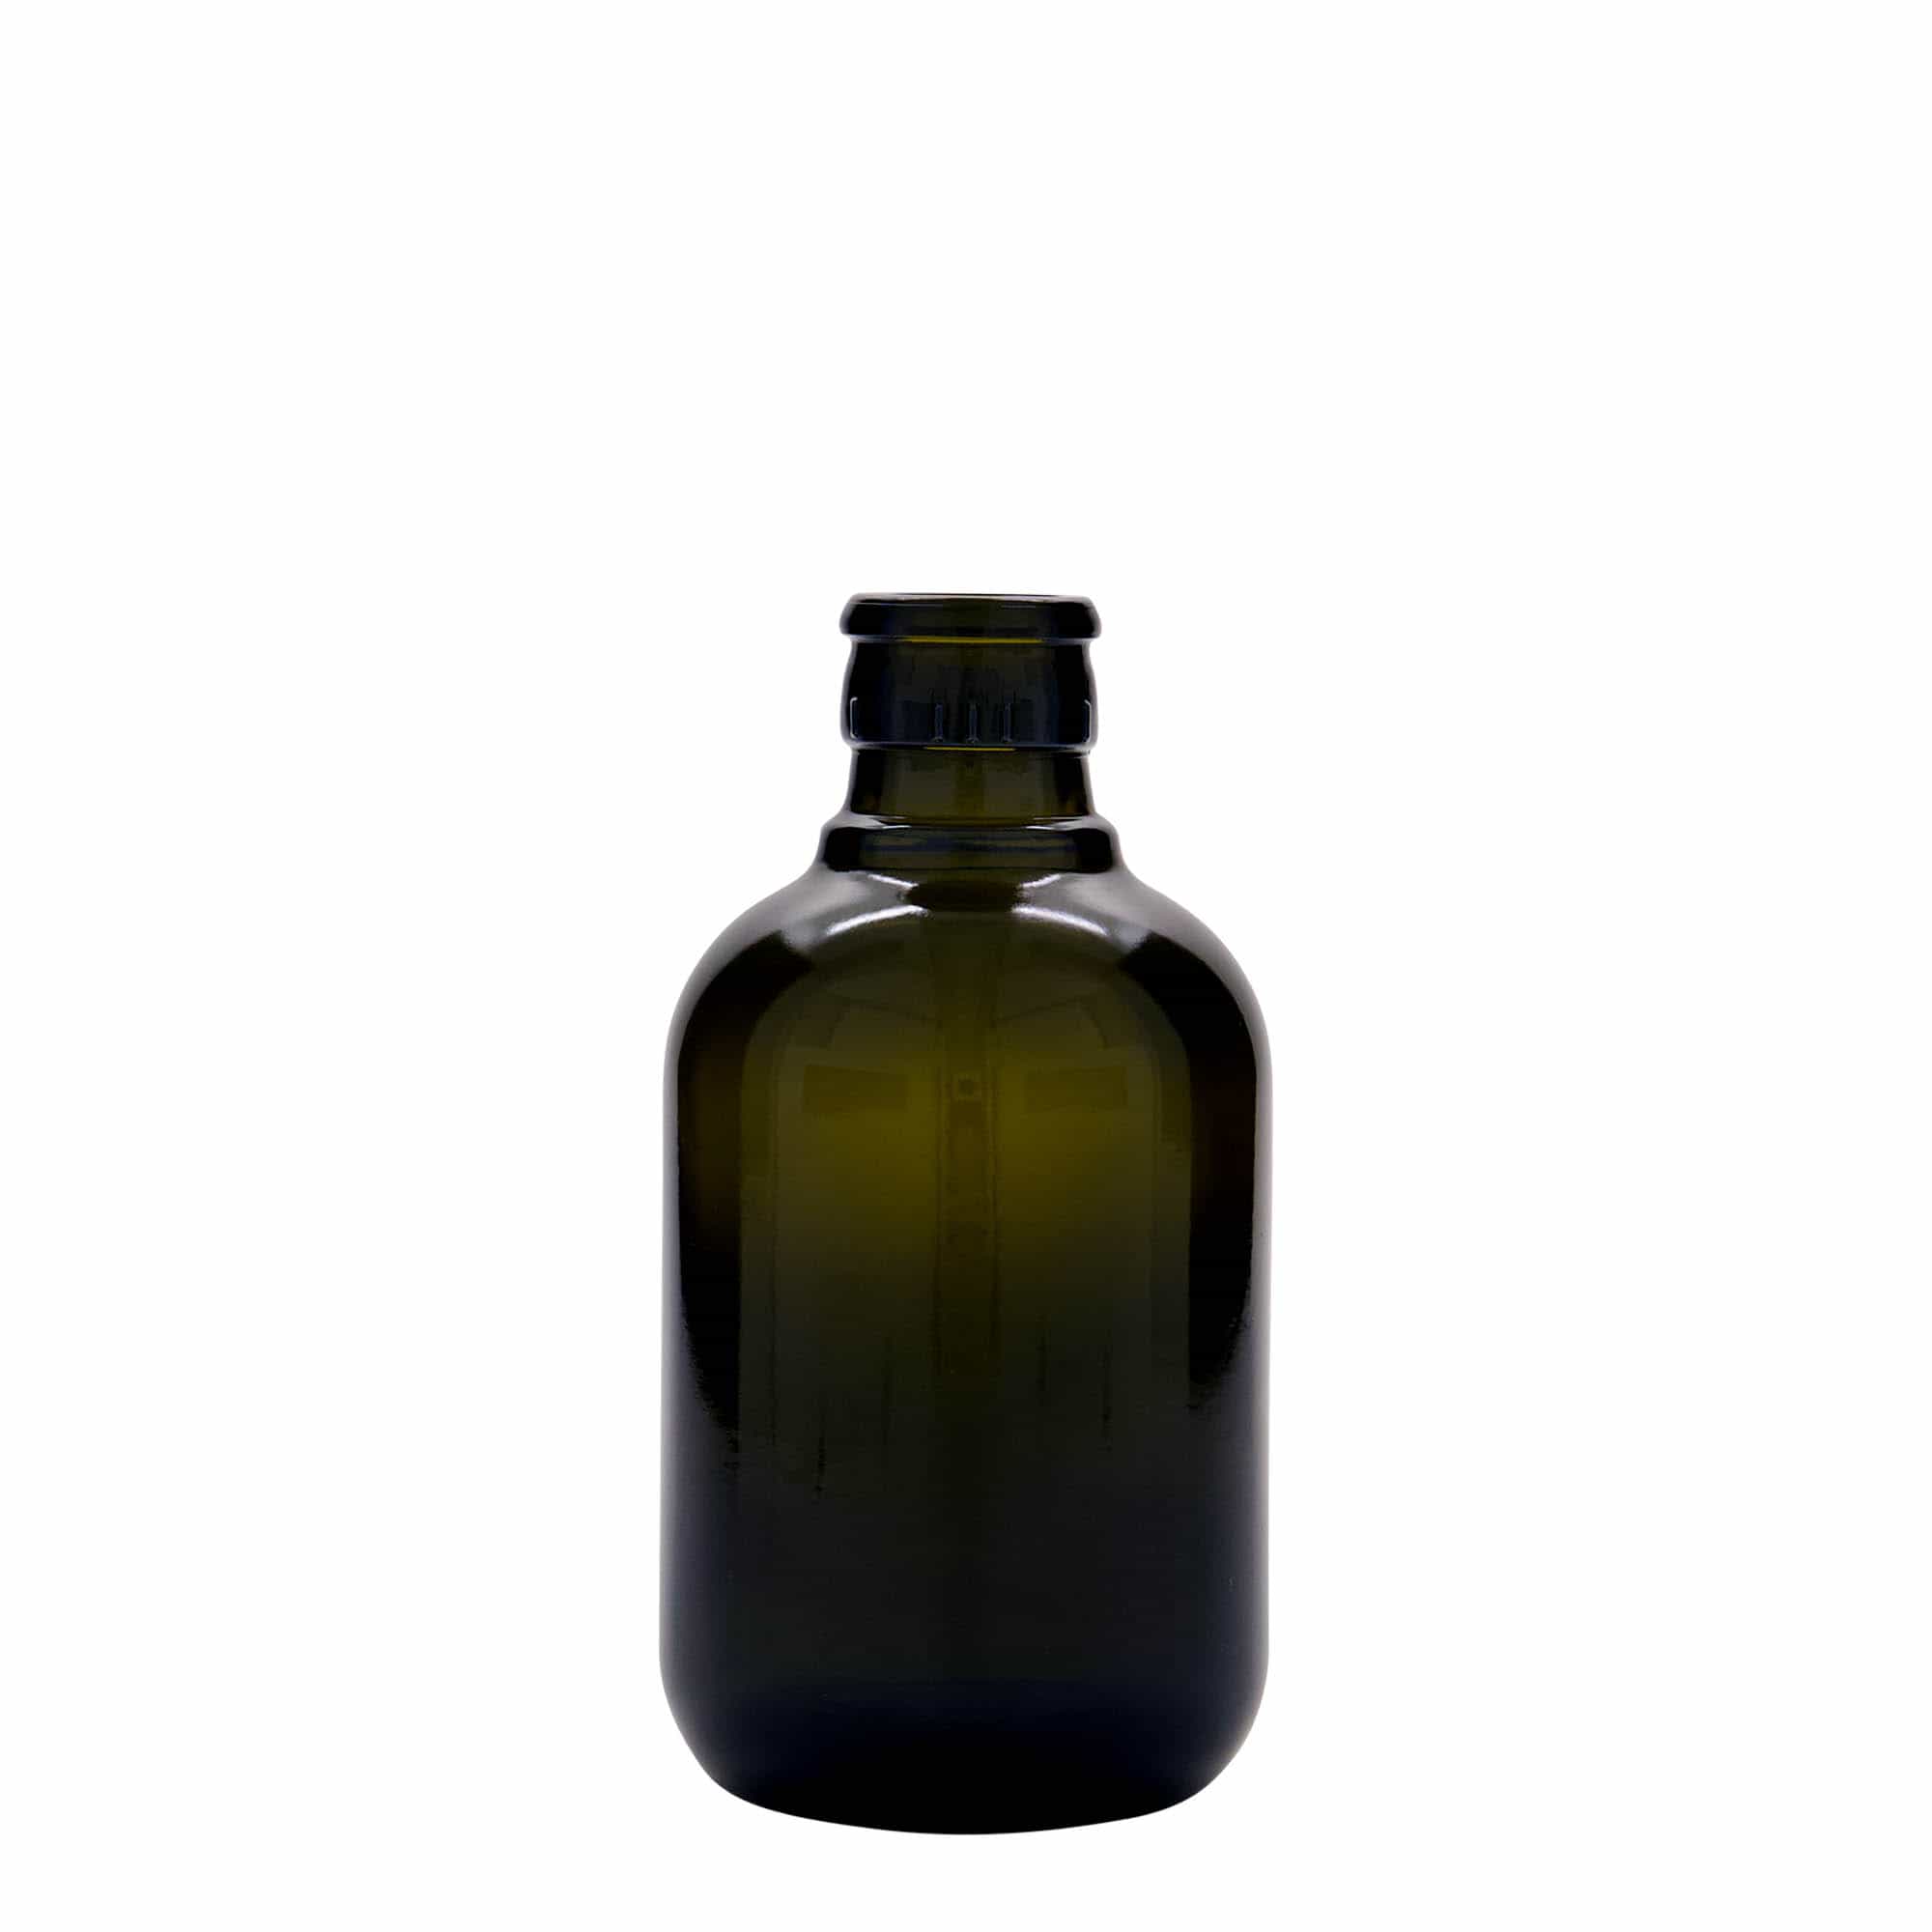 Azijn-/oliefles 'Biolio', 250 ml, glas, antiekgroen, monding: DOP